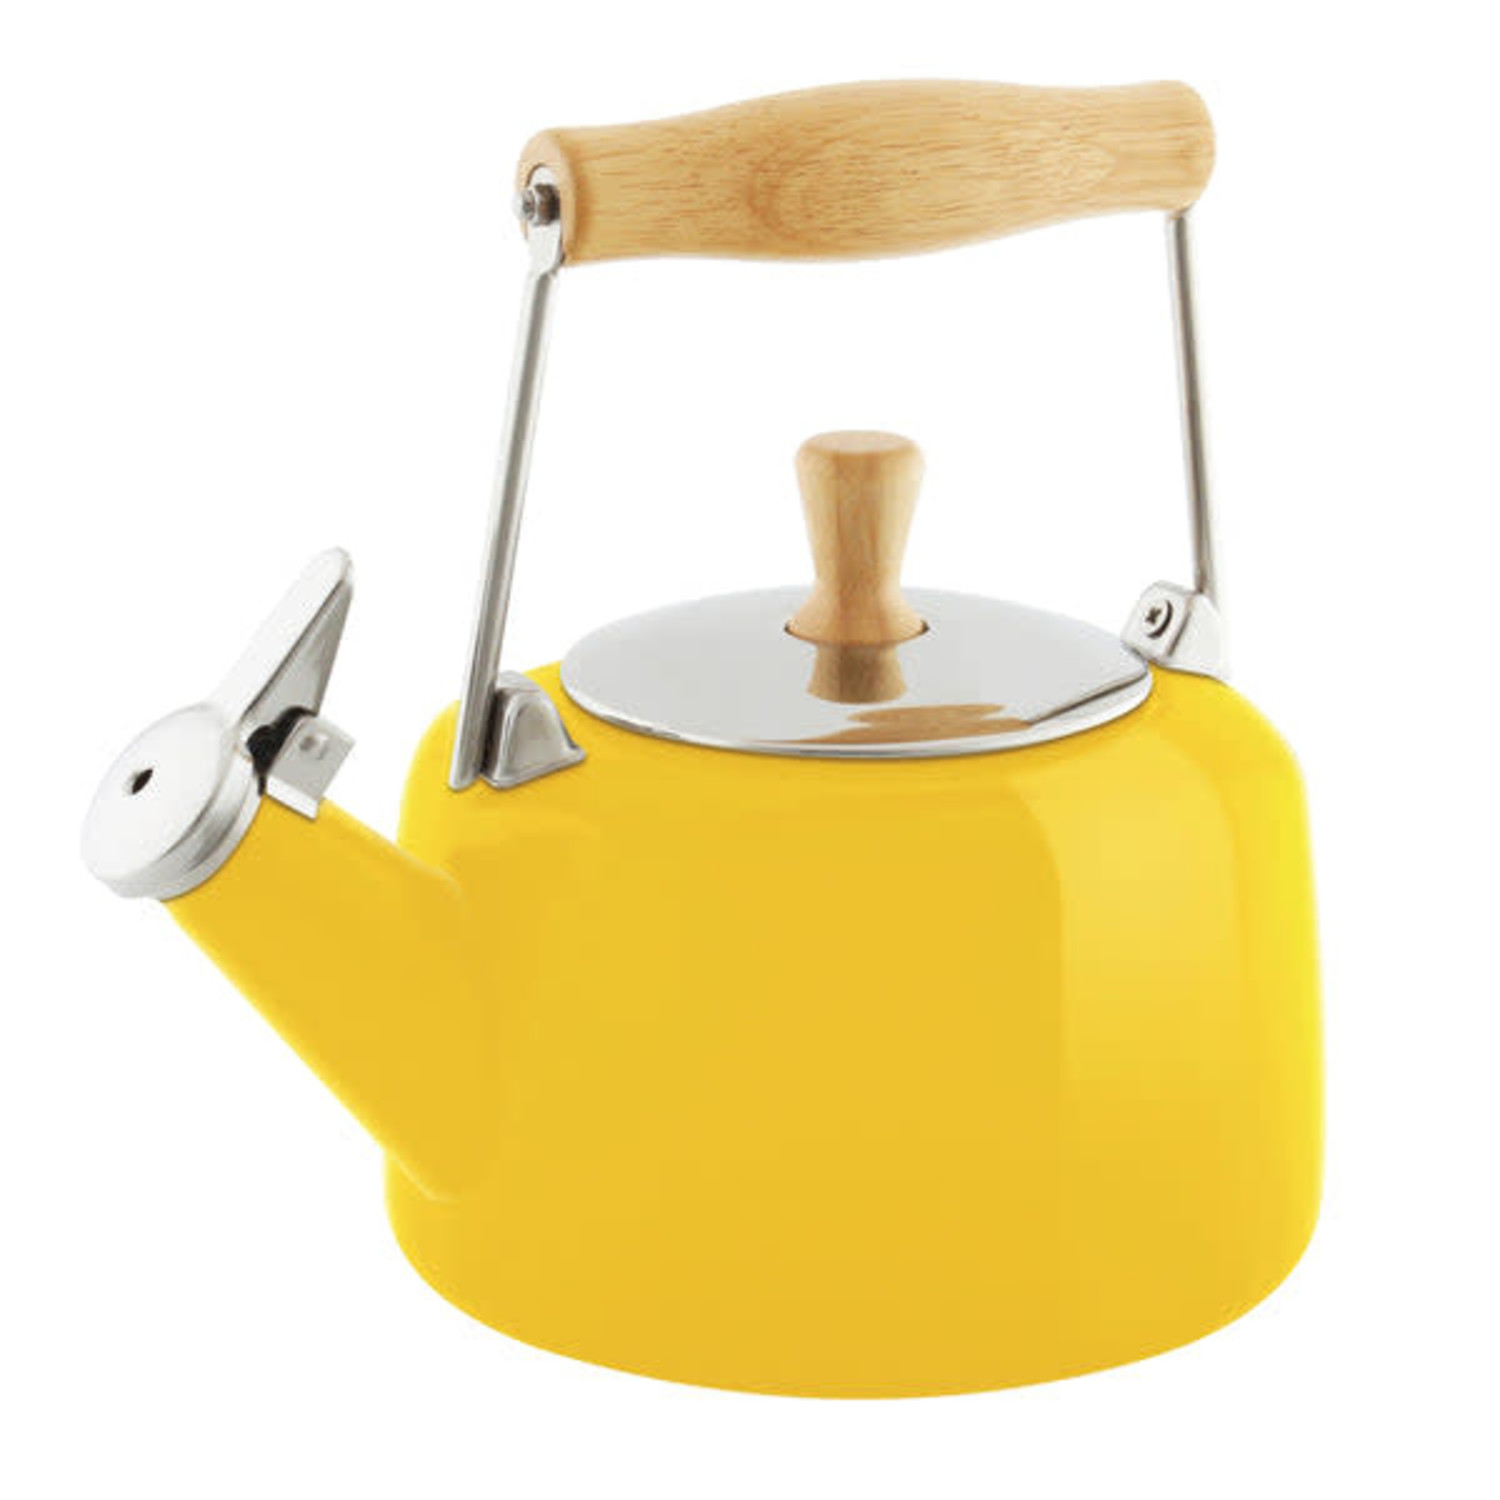 https://cdn.shoplightspeed.com/shops/633447/files/42365193/1500x4000x3/chantal-canary-yellow-sven-tea-kettle.jpg